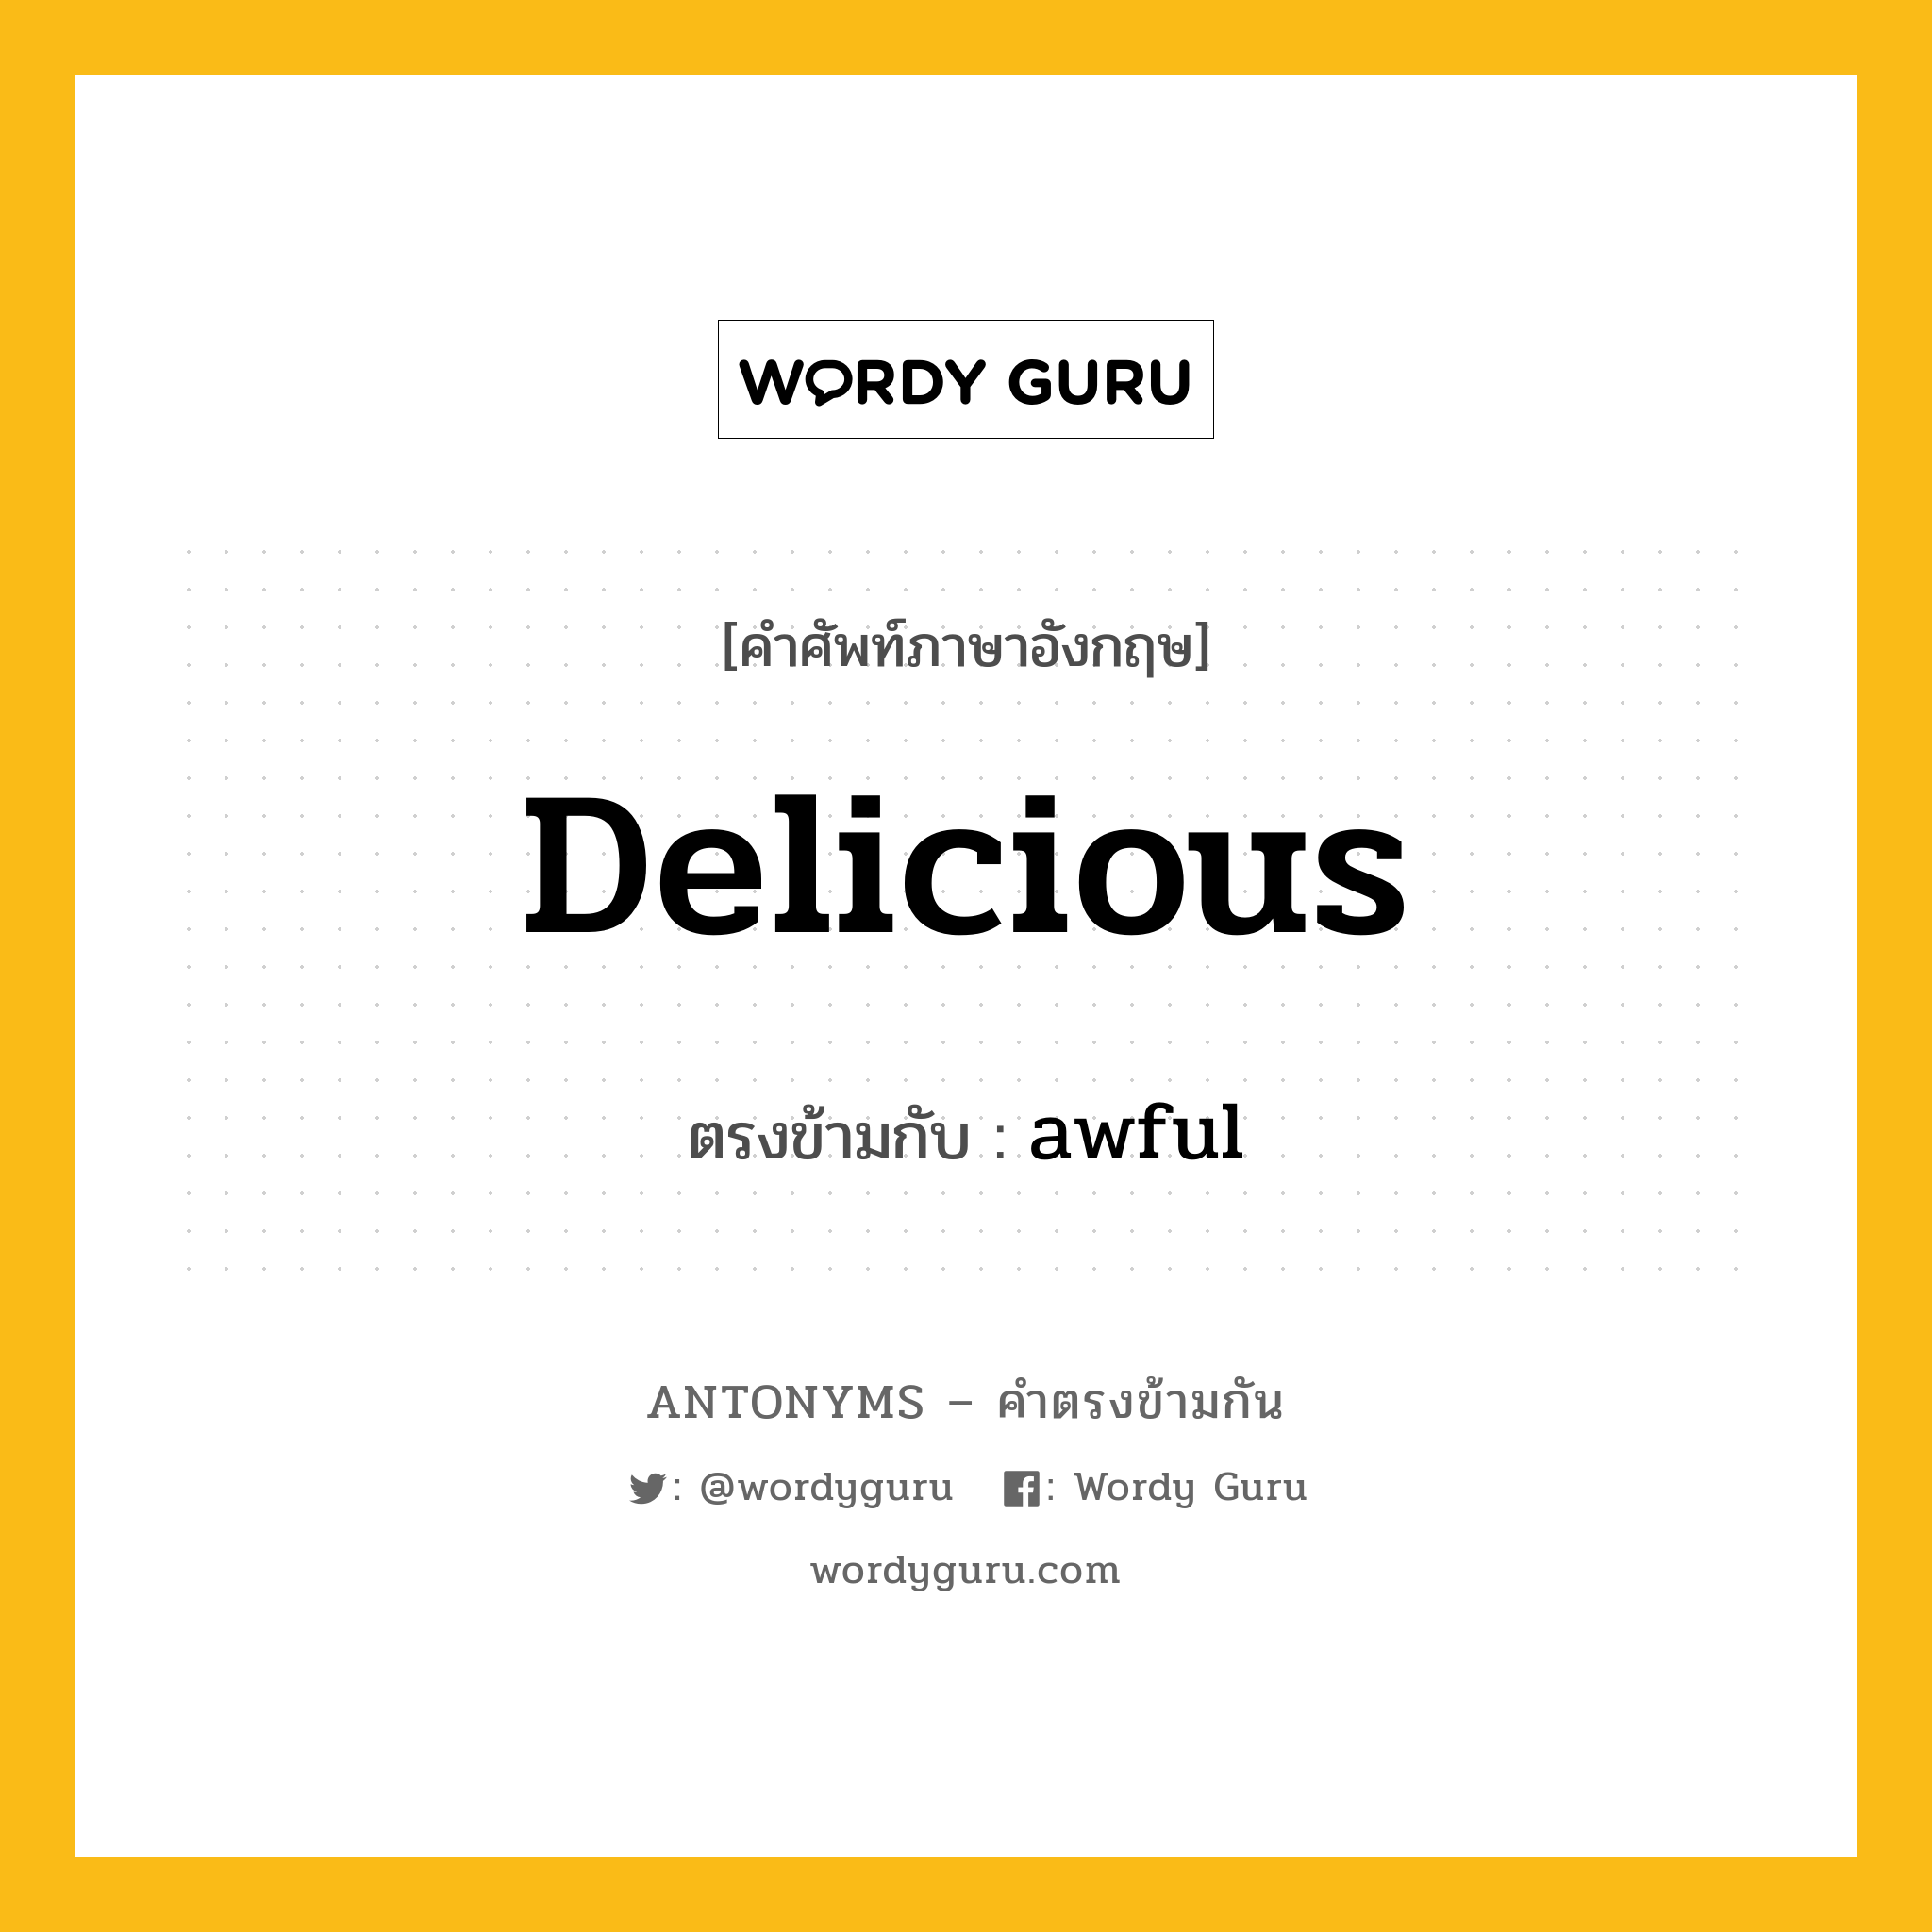 delicious เป็นคำตรงข้ามกับคำไหนบ้าง?, คำศัพท์ภาษาอังกฤษ delicious ตรงข้ามกับ awful หมวด awful